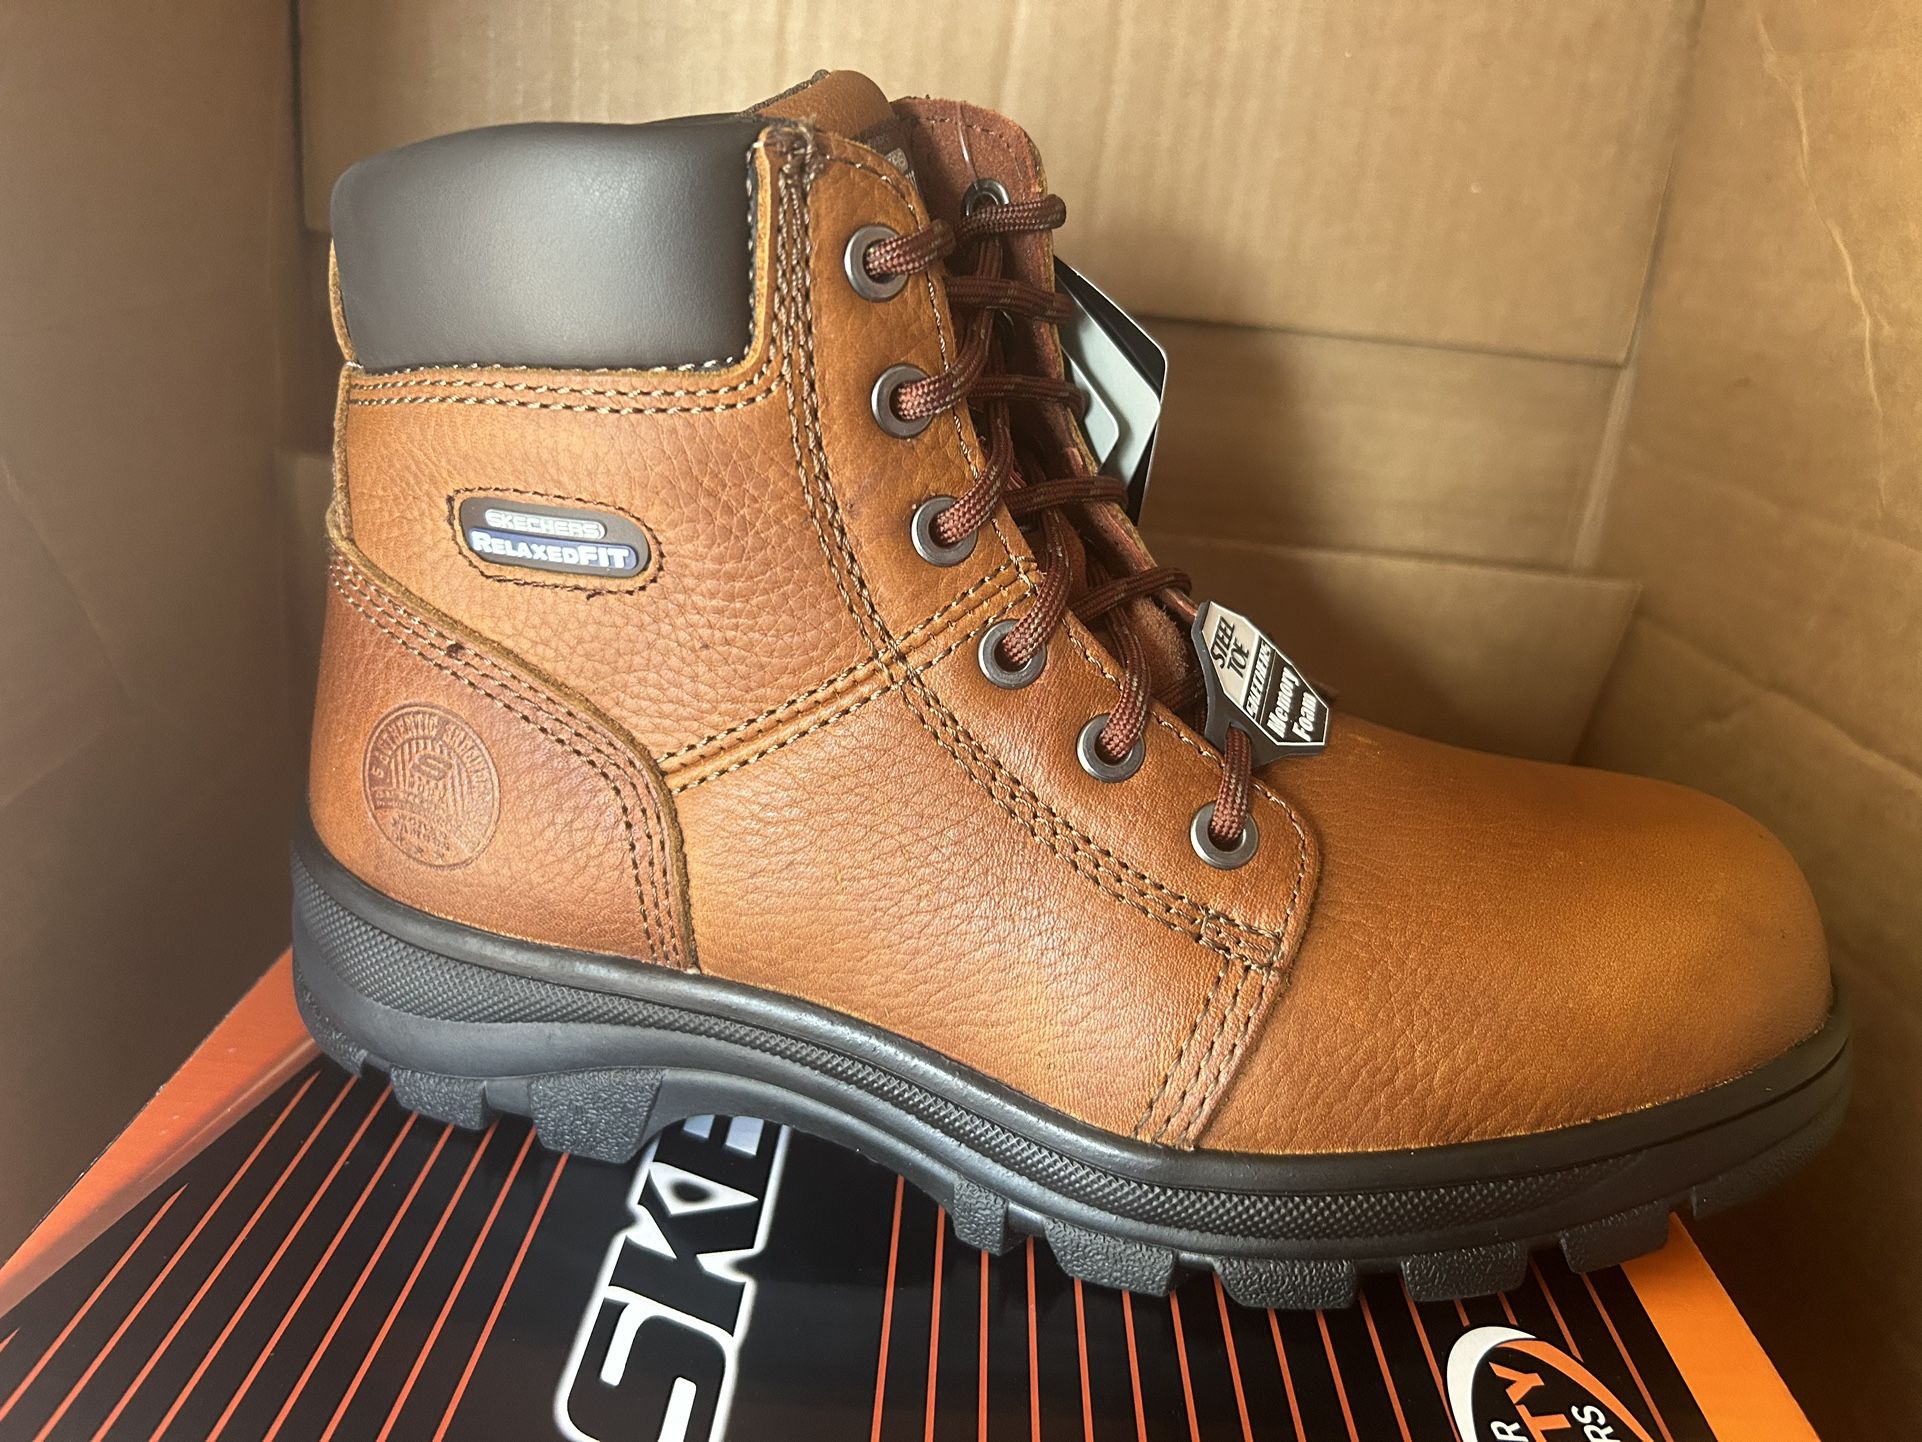 Skechers Steel Toe Work Boots Sizes 8-10.5-11